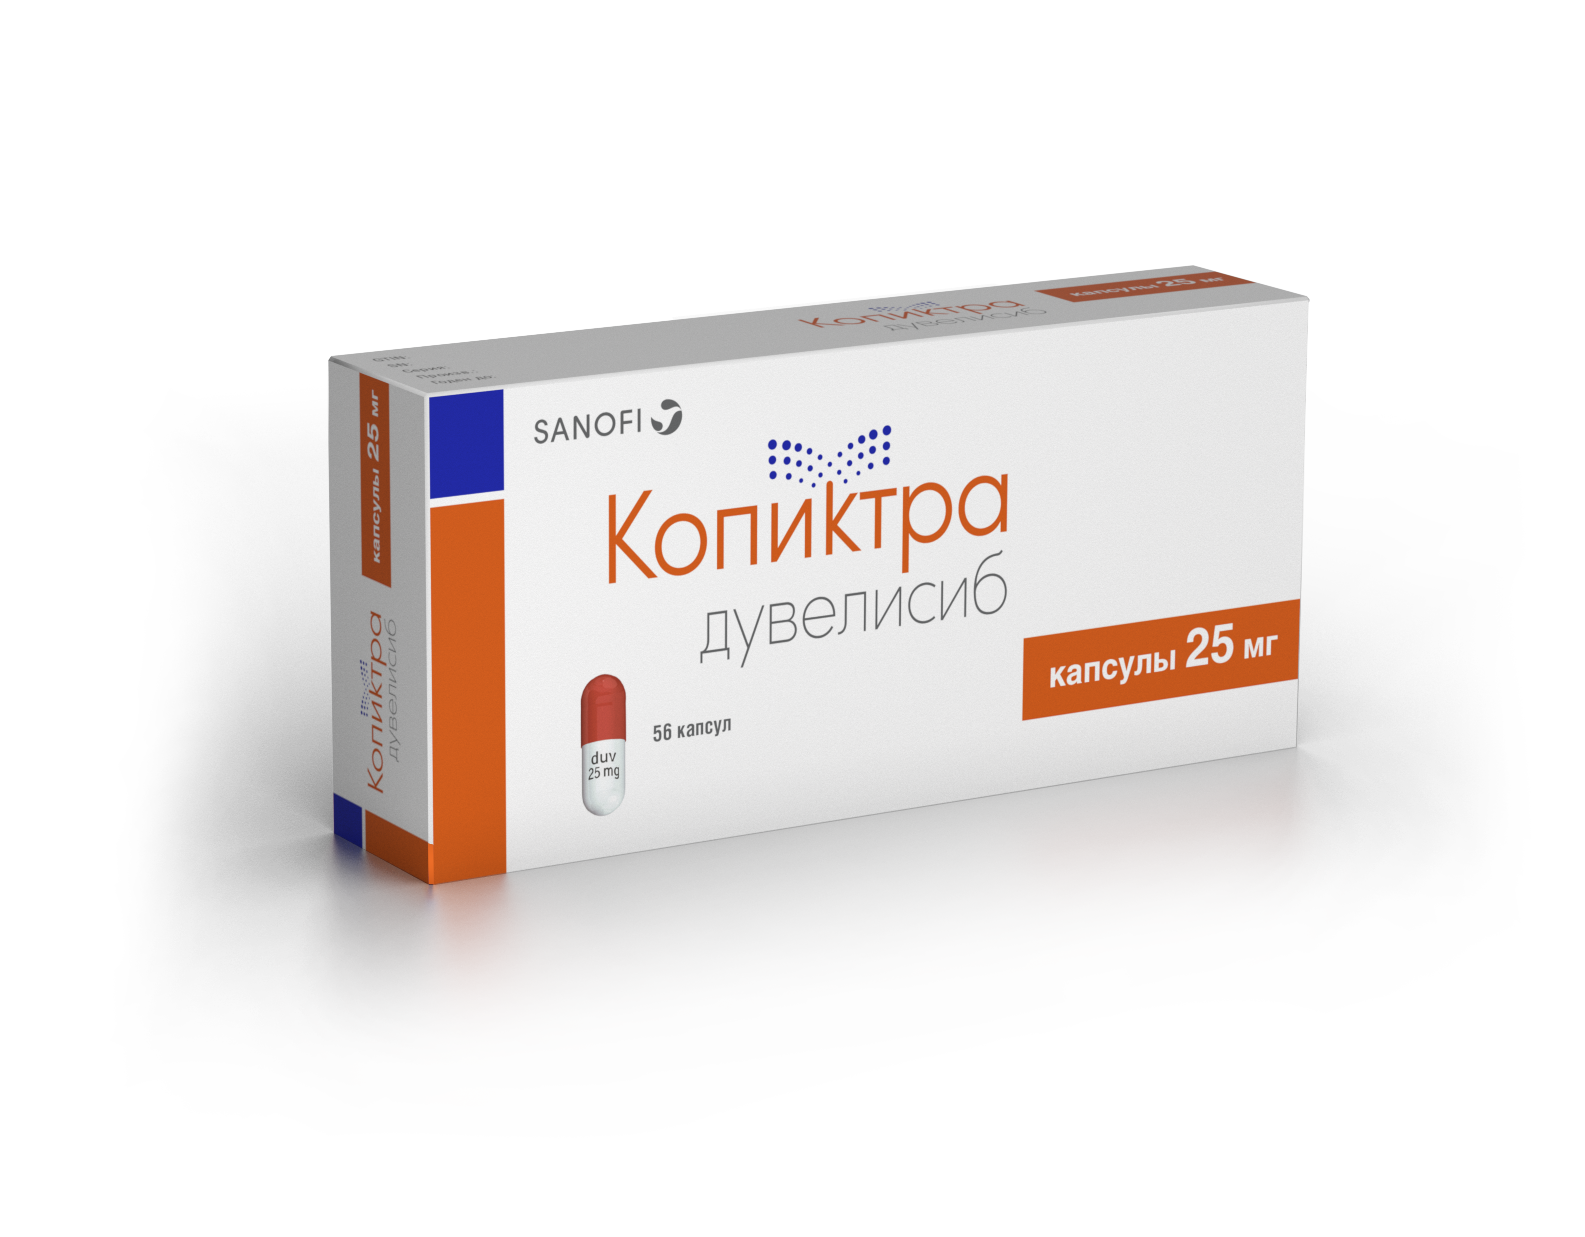 Препарат Копиктра (дувелисиб) зарегистрирован в России для лечения .